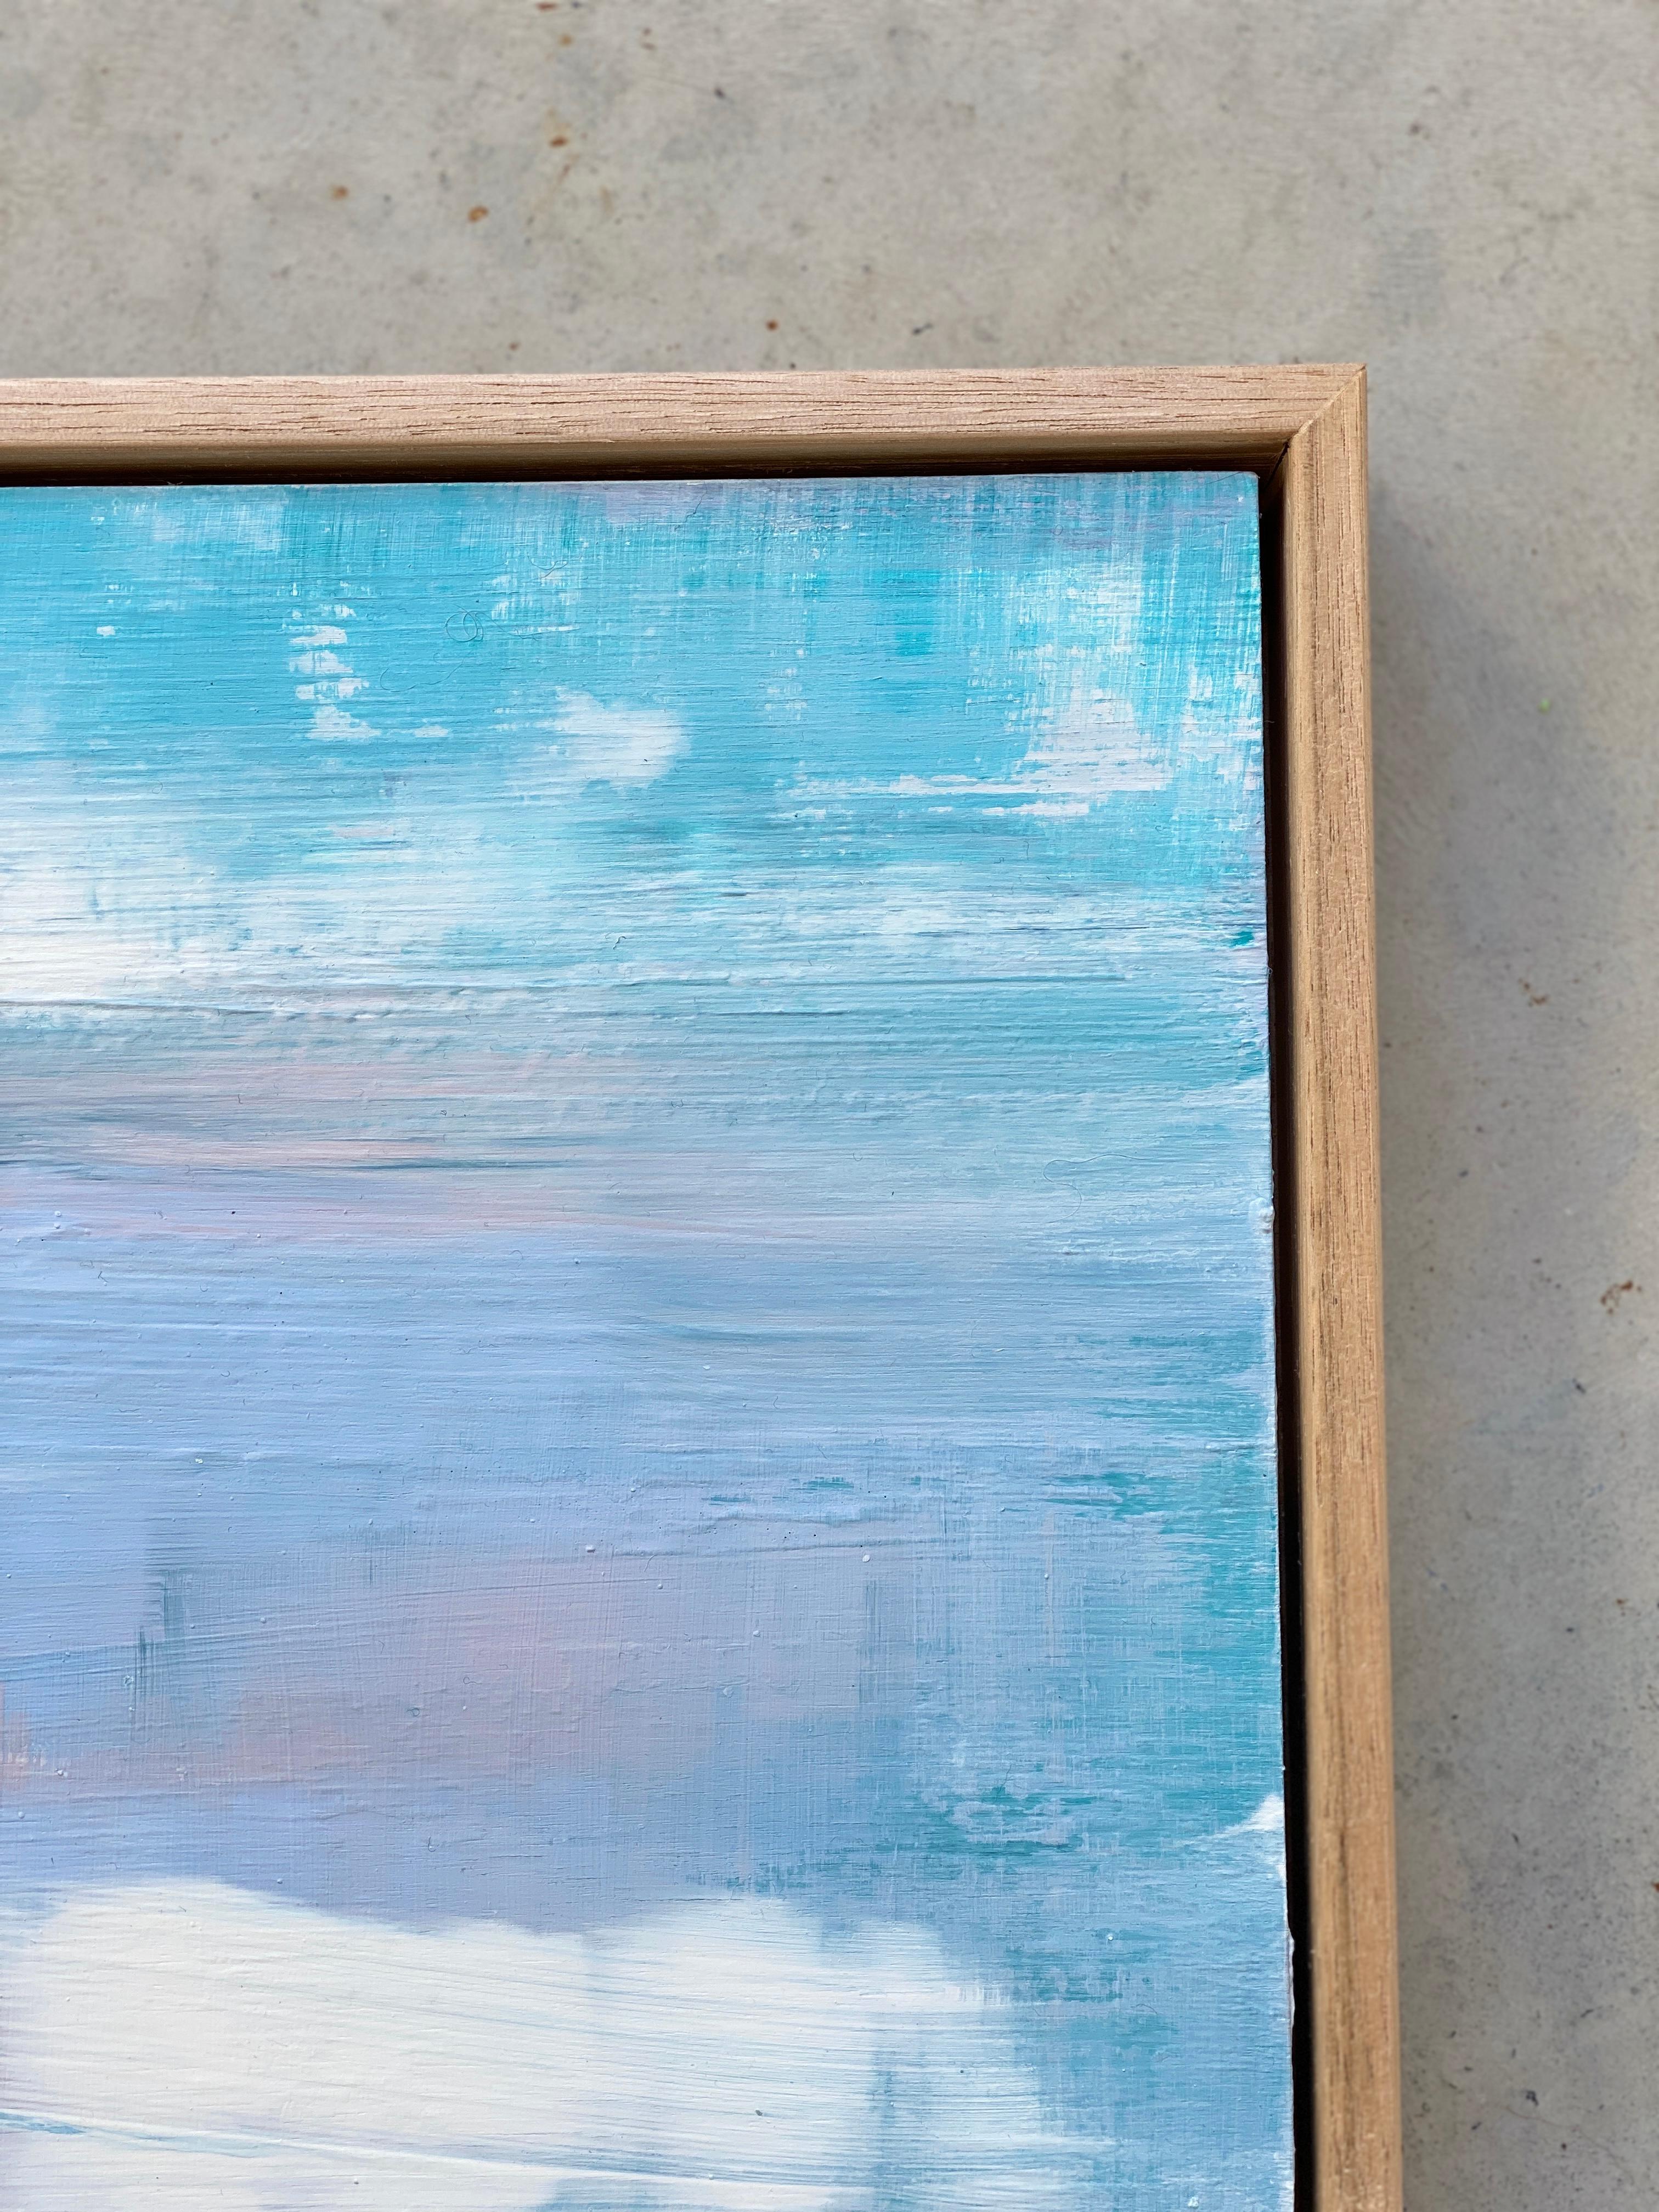 Floating Away', un petit tableau carré, encadré sur mesure, peintures abstraites minimalistes sur contreplaqué de bois. Illuminez la pièce avec des couleurs vives et estivales, des pastels et des aquas. Profitez de l'énergie et de la sensation de